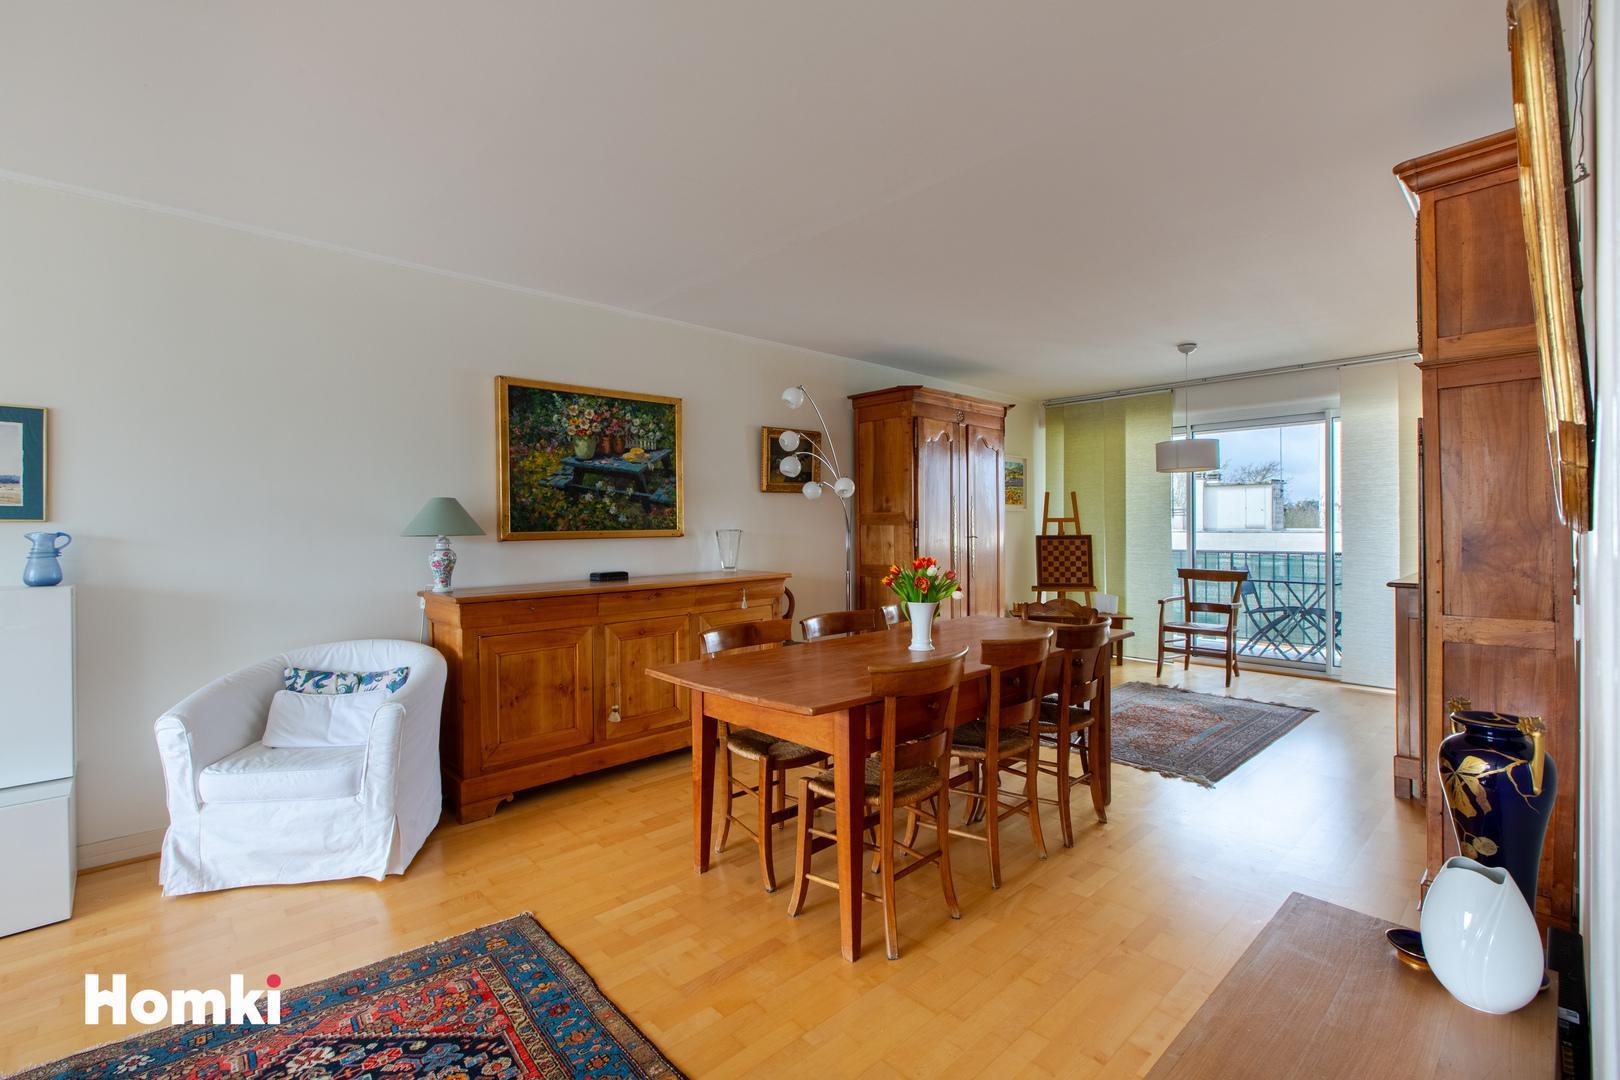 Homki - Vente Appartement  de 92.0 m² à Orléans 45000